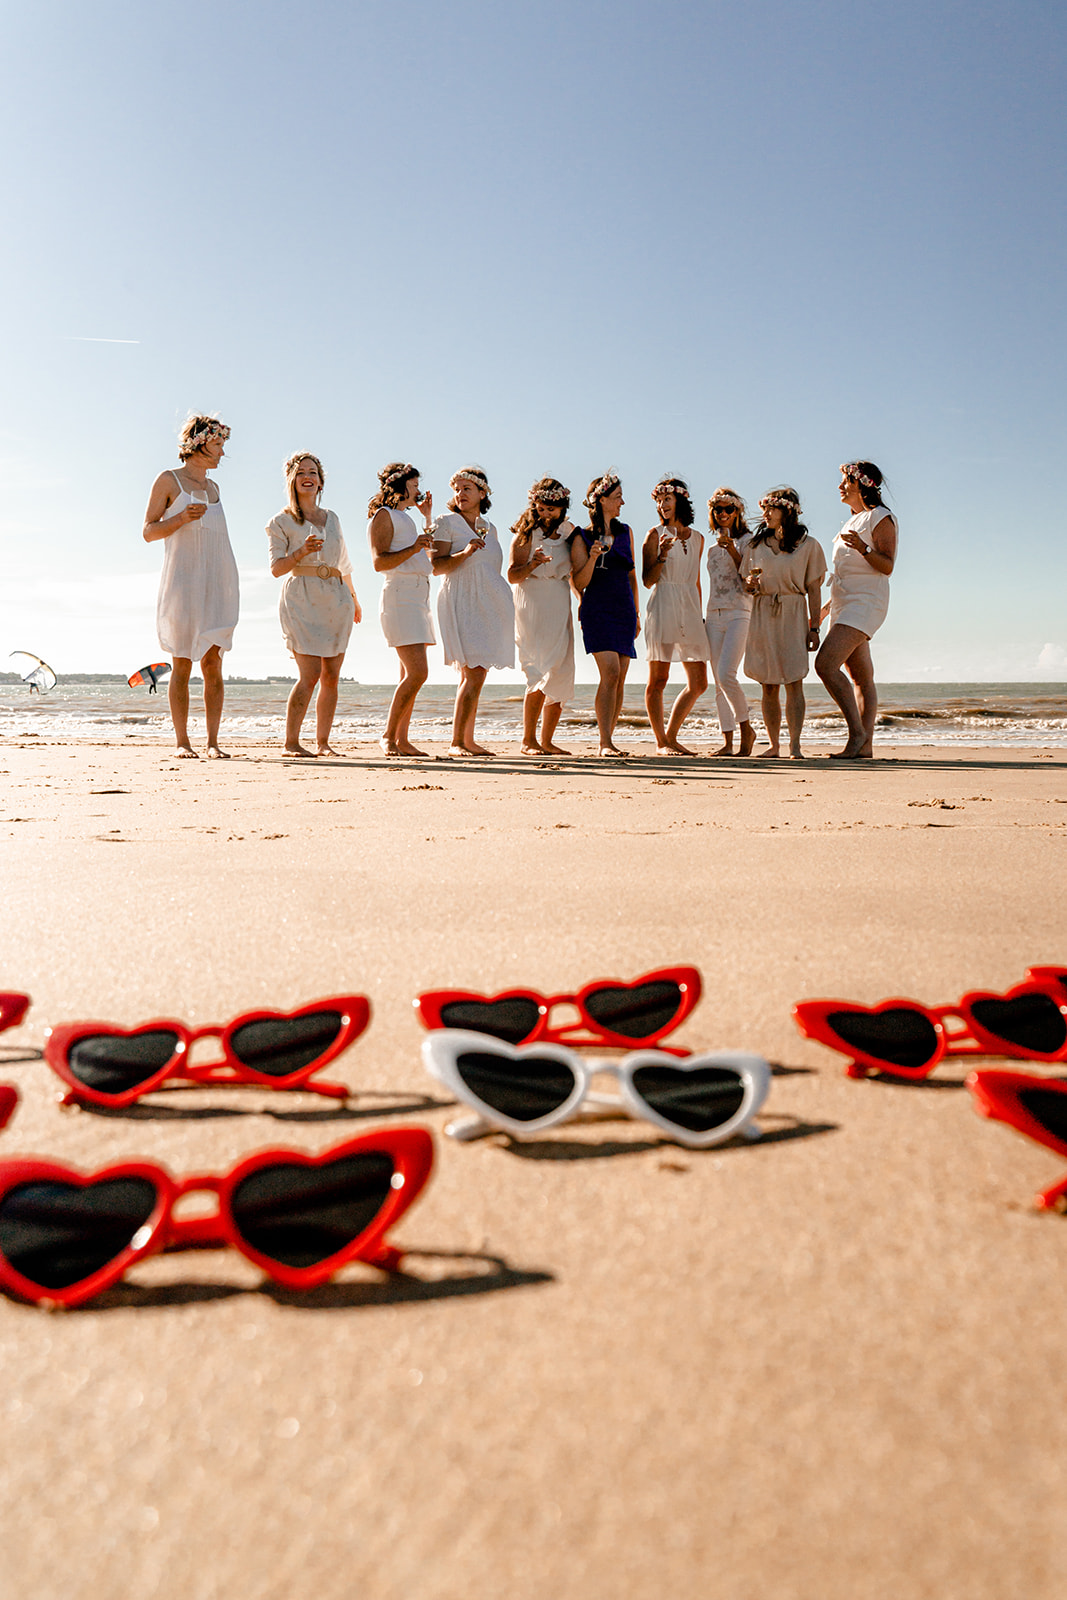 Accessoires de séance photo EVJF : lunettes de soleil assorties portées par un groupe d'amies sur la plage.